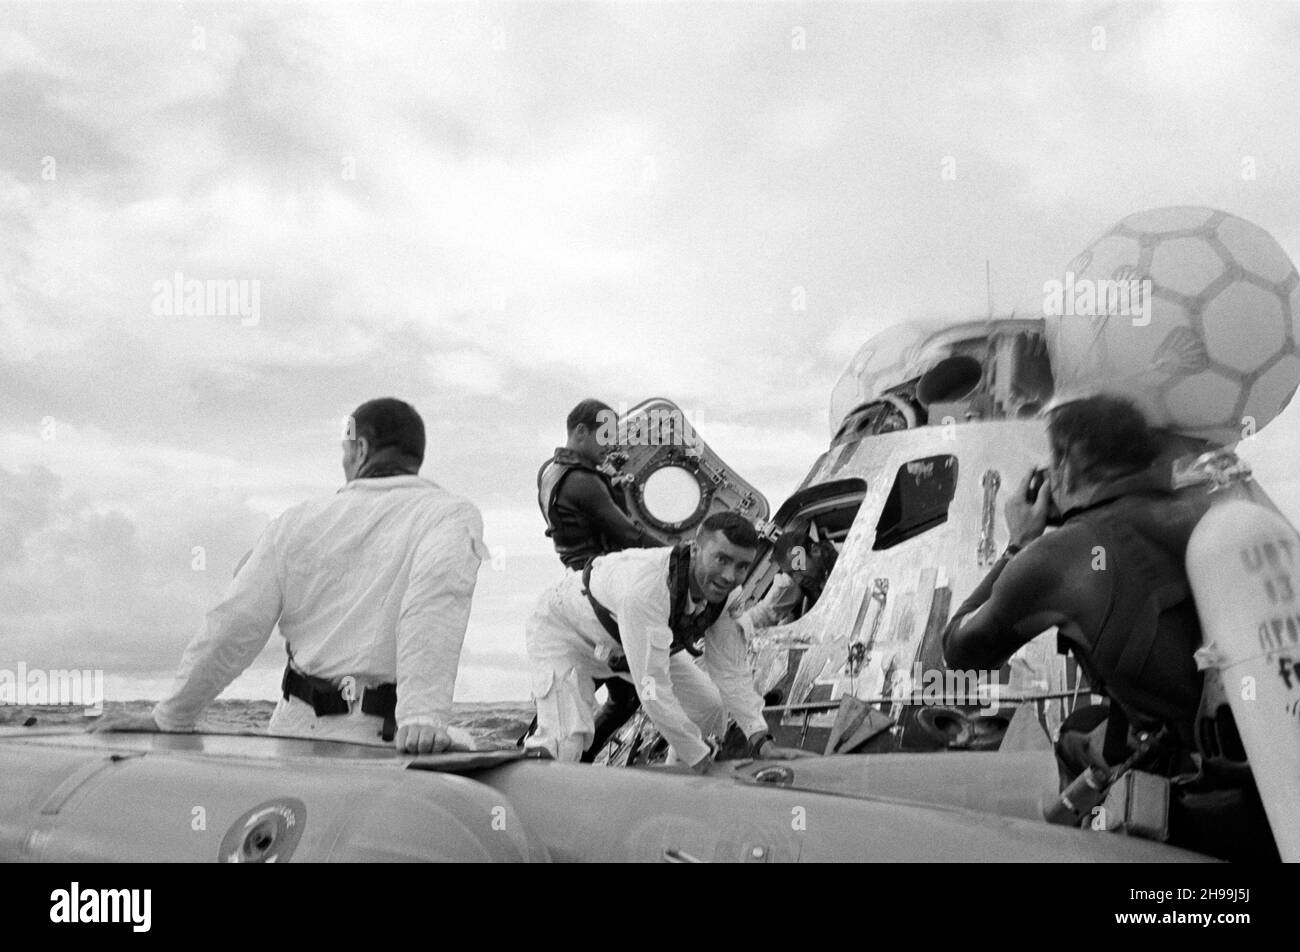 Vue du niveau de l'eau des opérations de récupération d'Apollo 13 dans l'océan Pacifique Sud.Les trois astronautes ont été vus en sortie de leur vaisseau spatial.John L. Swigert Jr. (Retour à la caméra), pilote de module de commande, est déjà dans le radeau de sauvetage.Fred W. Haise Jr., pilote de module lunaire, face à la caméra, est en train d'entrer dans le radeau de sauvetage.James A. Lovell Jr., commandant, laisse le vaisseau spatial en arrière-plan.Une équipe de démolition sous-marine de la Marine des États-Unis participe aux opérations de récupération.Les trois membres de l'équipage ont été ramassés par hélicoptère et transportés par avion jusqu'au premier navire de récupération, l'USS Iwo Jima Banque D'Images